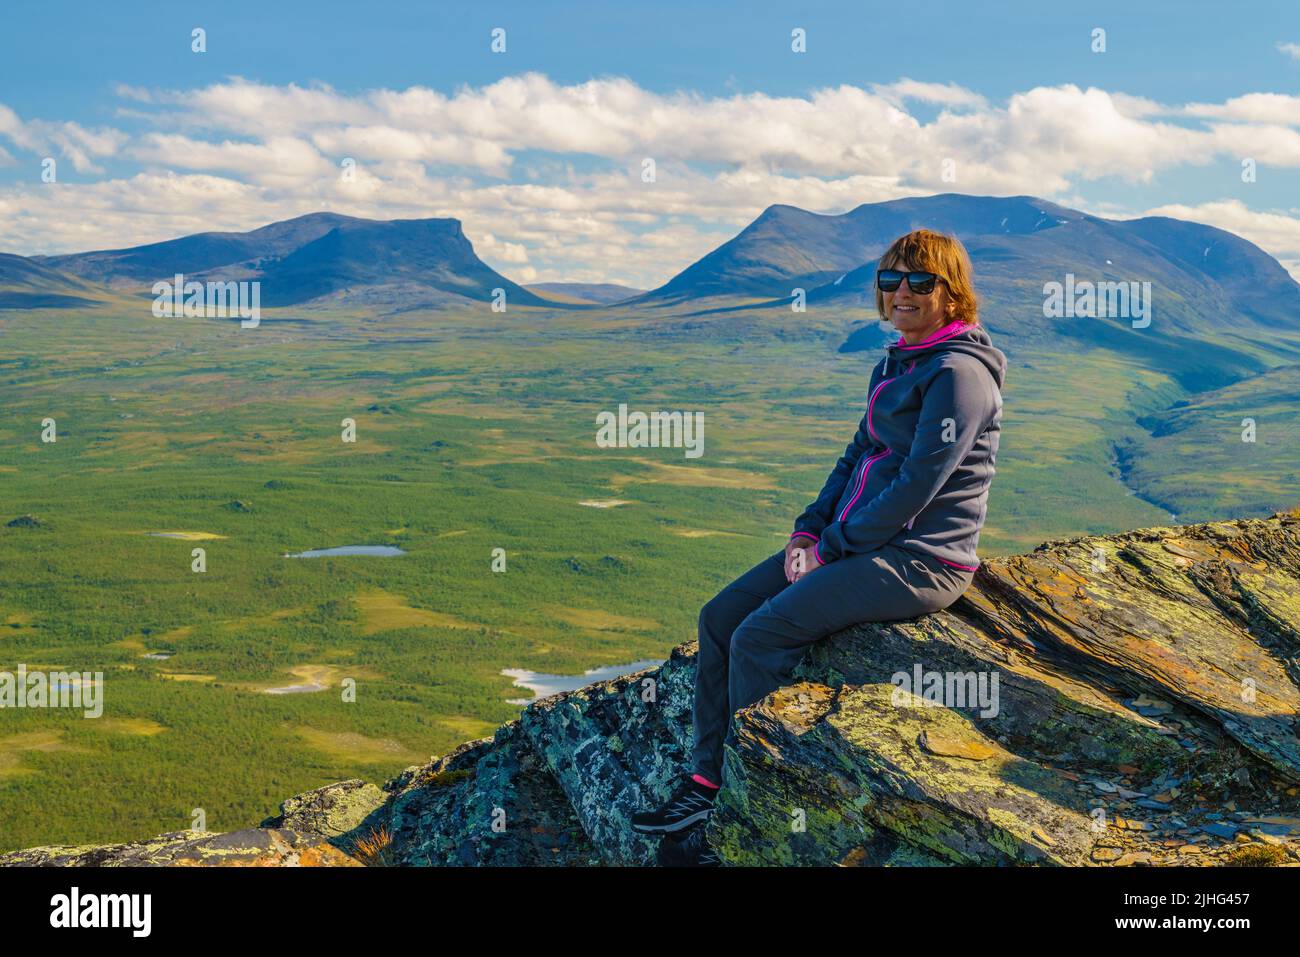 Frau auf einem Felsen auf dem Berg Nuolja mit Lapporten, Tjuonavagge im Hintergrund, Abisko, Schwedisch Lappland, Schweden Stockfoto